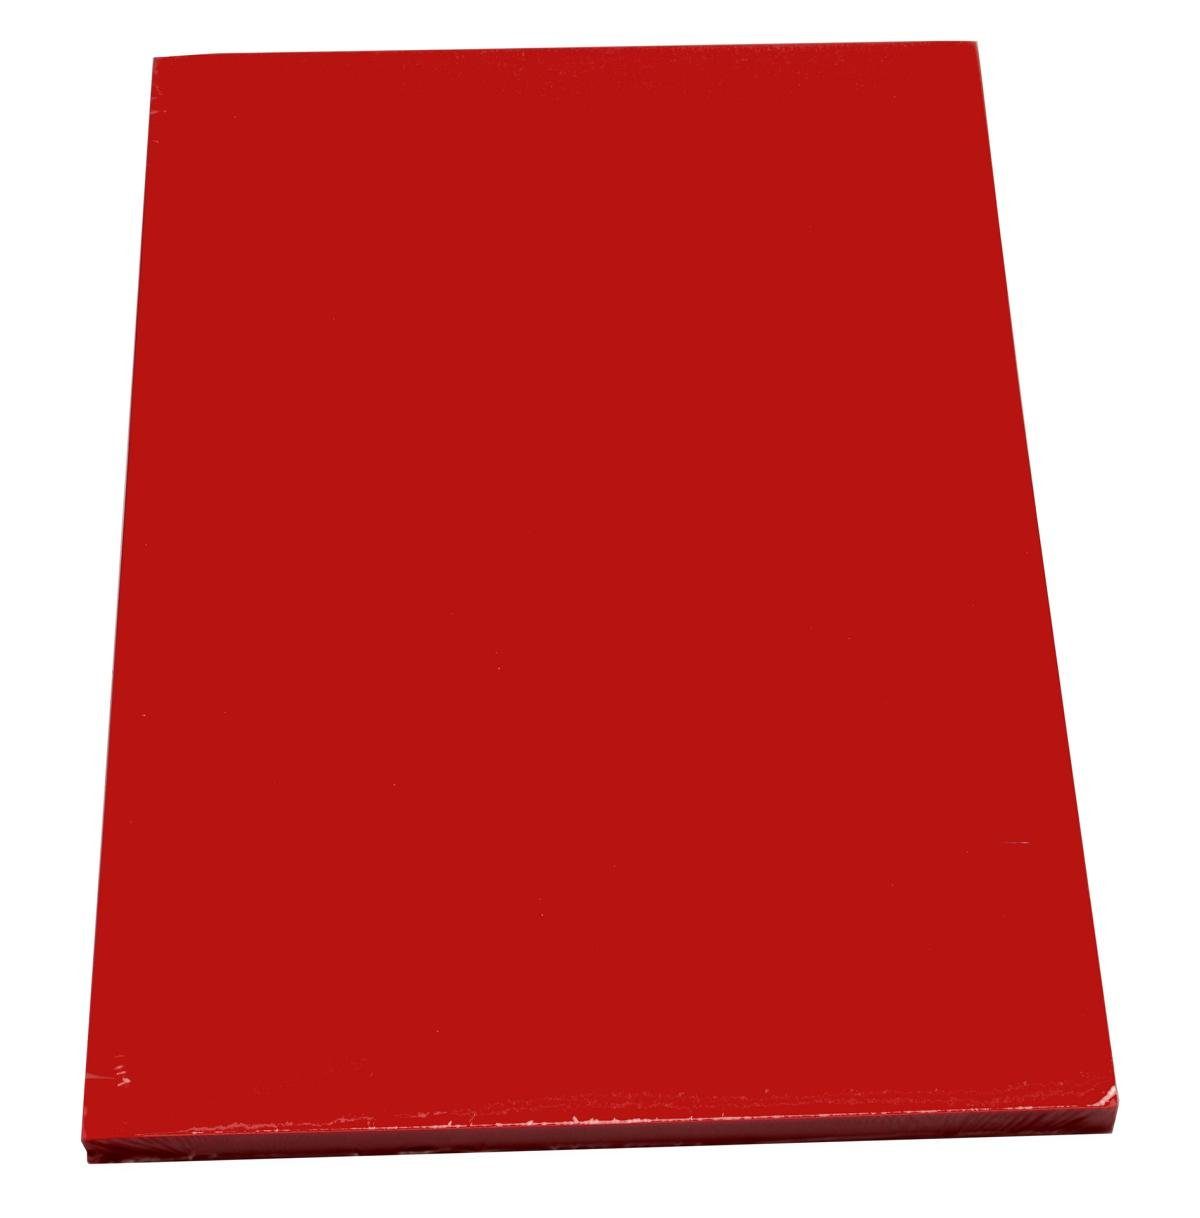 Livepac Office Drucker- und Kopierpapier 100 Blatt farbiges Druckerpapier / buntes Kopierpapier / Farbe: intens